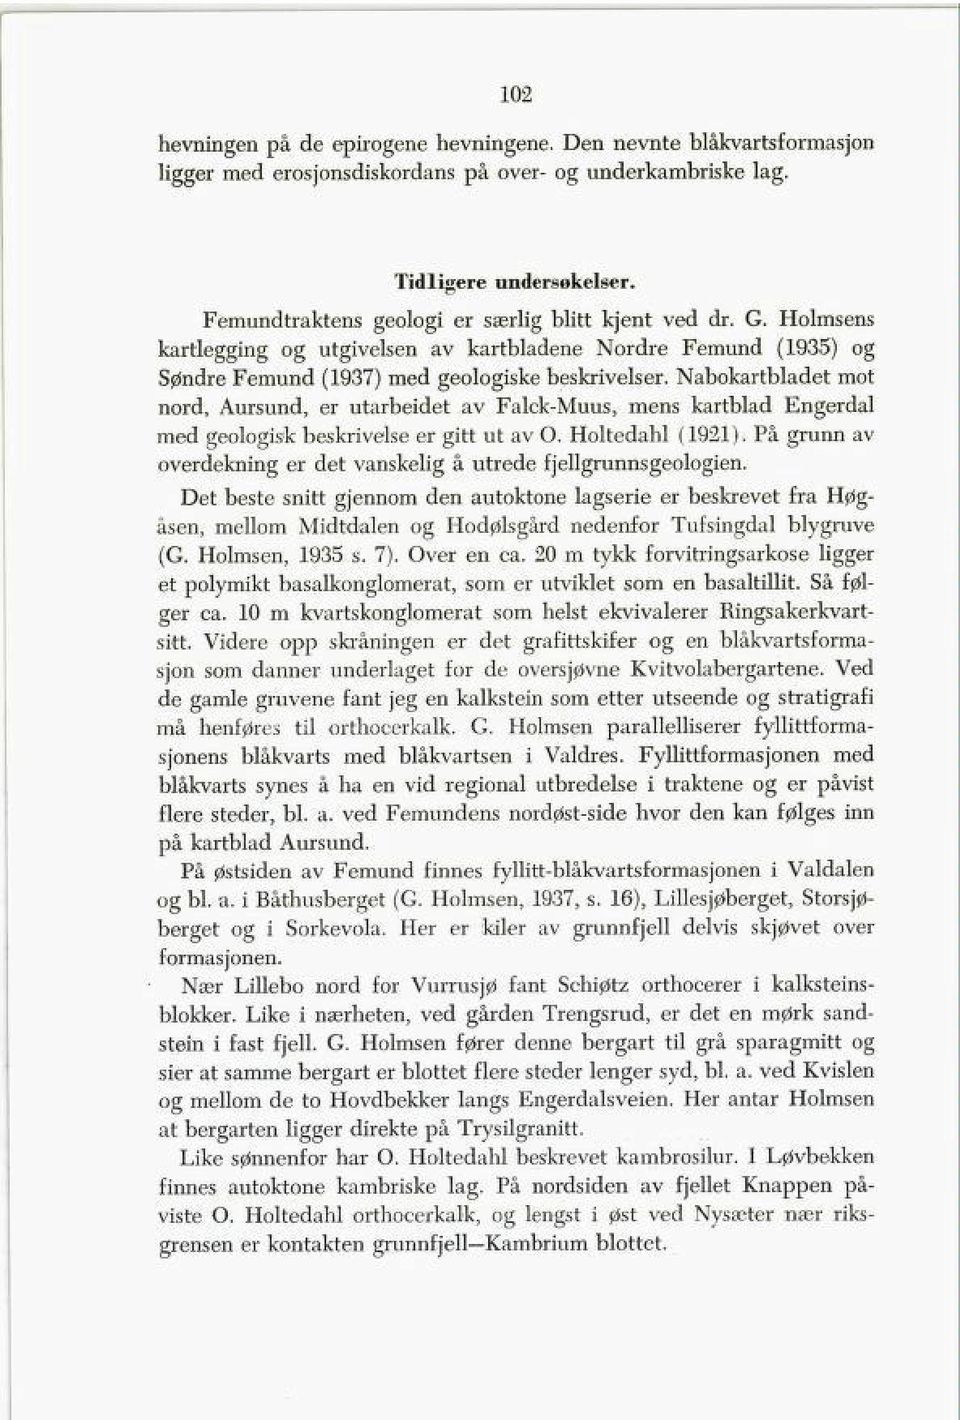 Nabokartbladet mot nord, Aursund, er utarbeidet av Falck-Muus, mens kartblad Engerdal med geologisk beskrivelse er gitt ut av O. Holtedahl (1921).